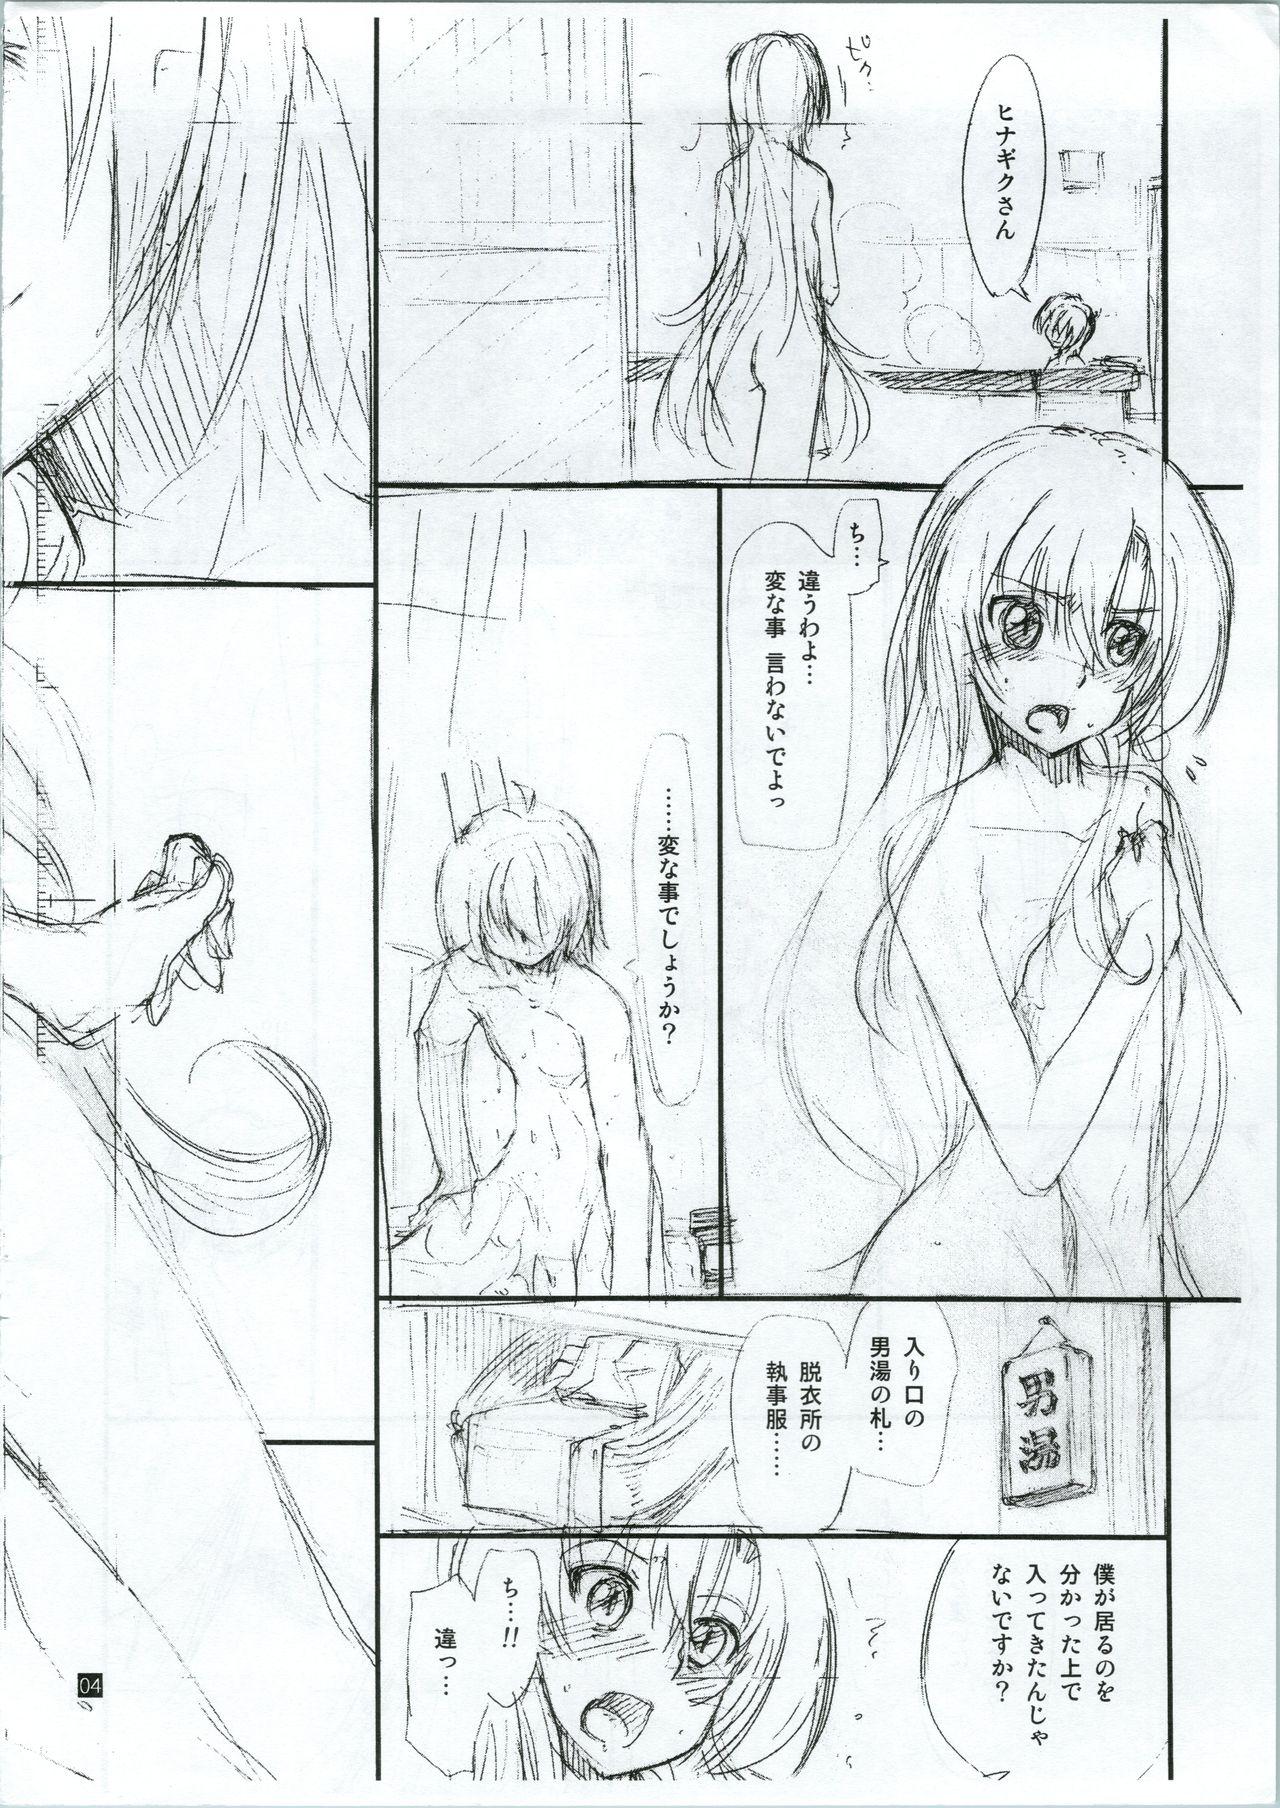 Gagging 20121231.C83 - Hayate no gotoku  - Page 5